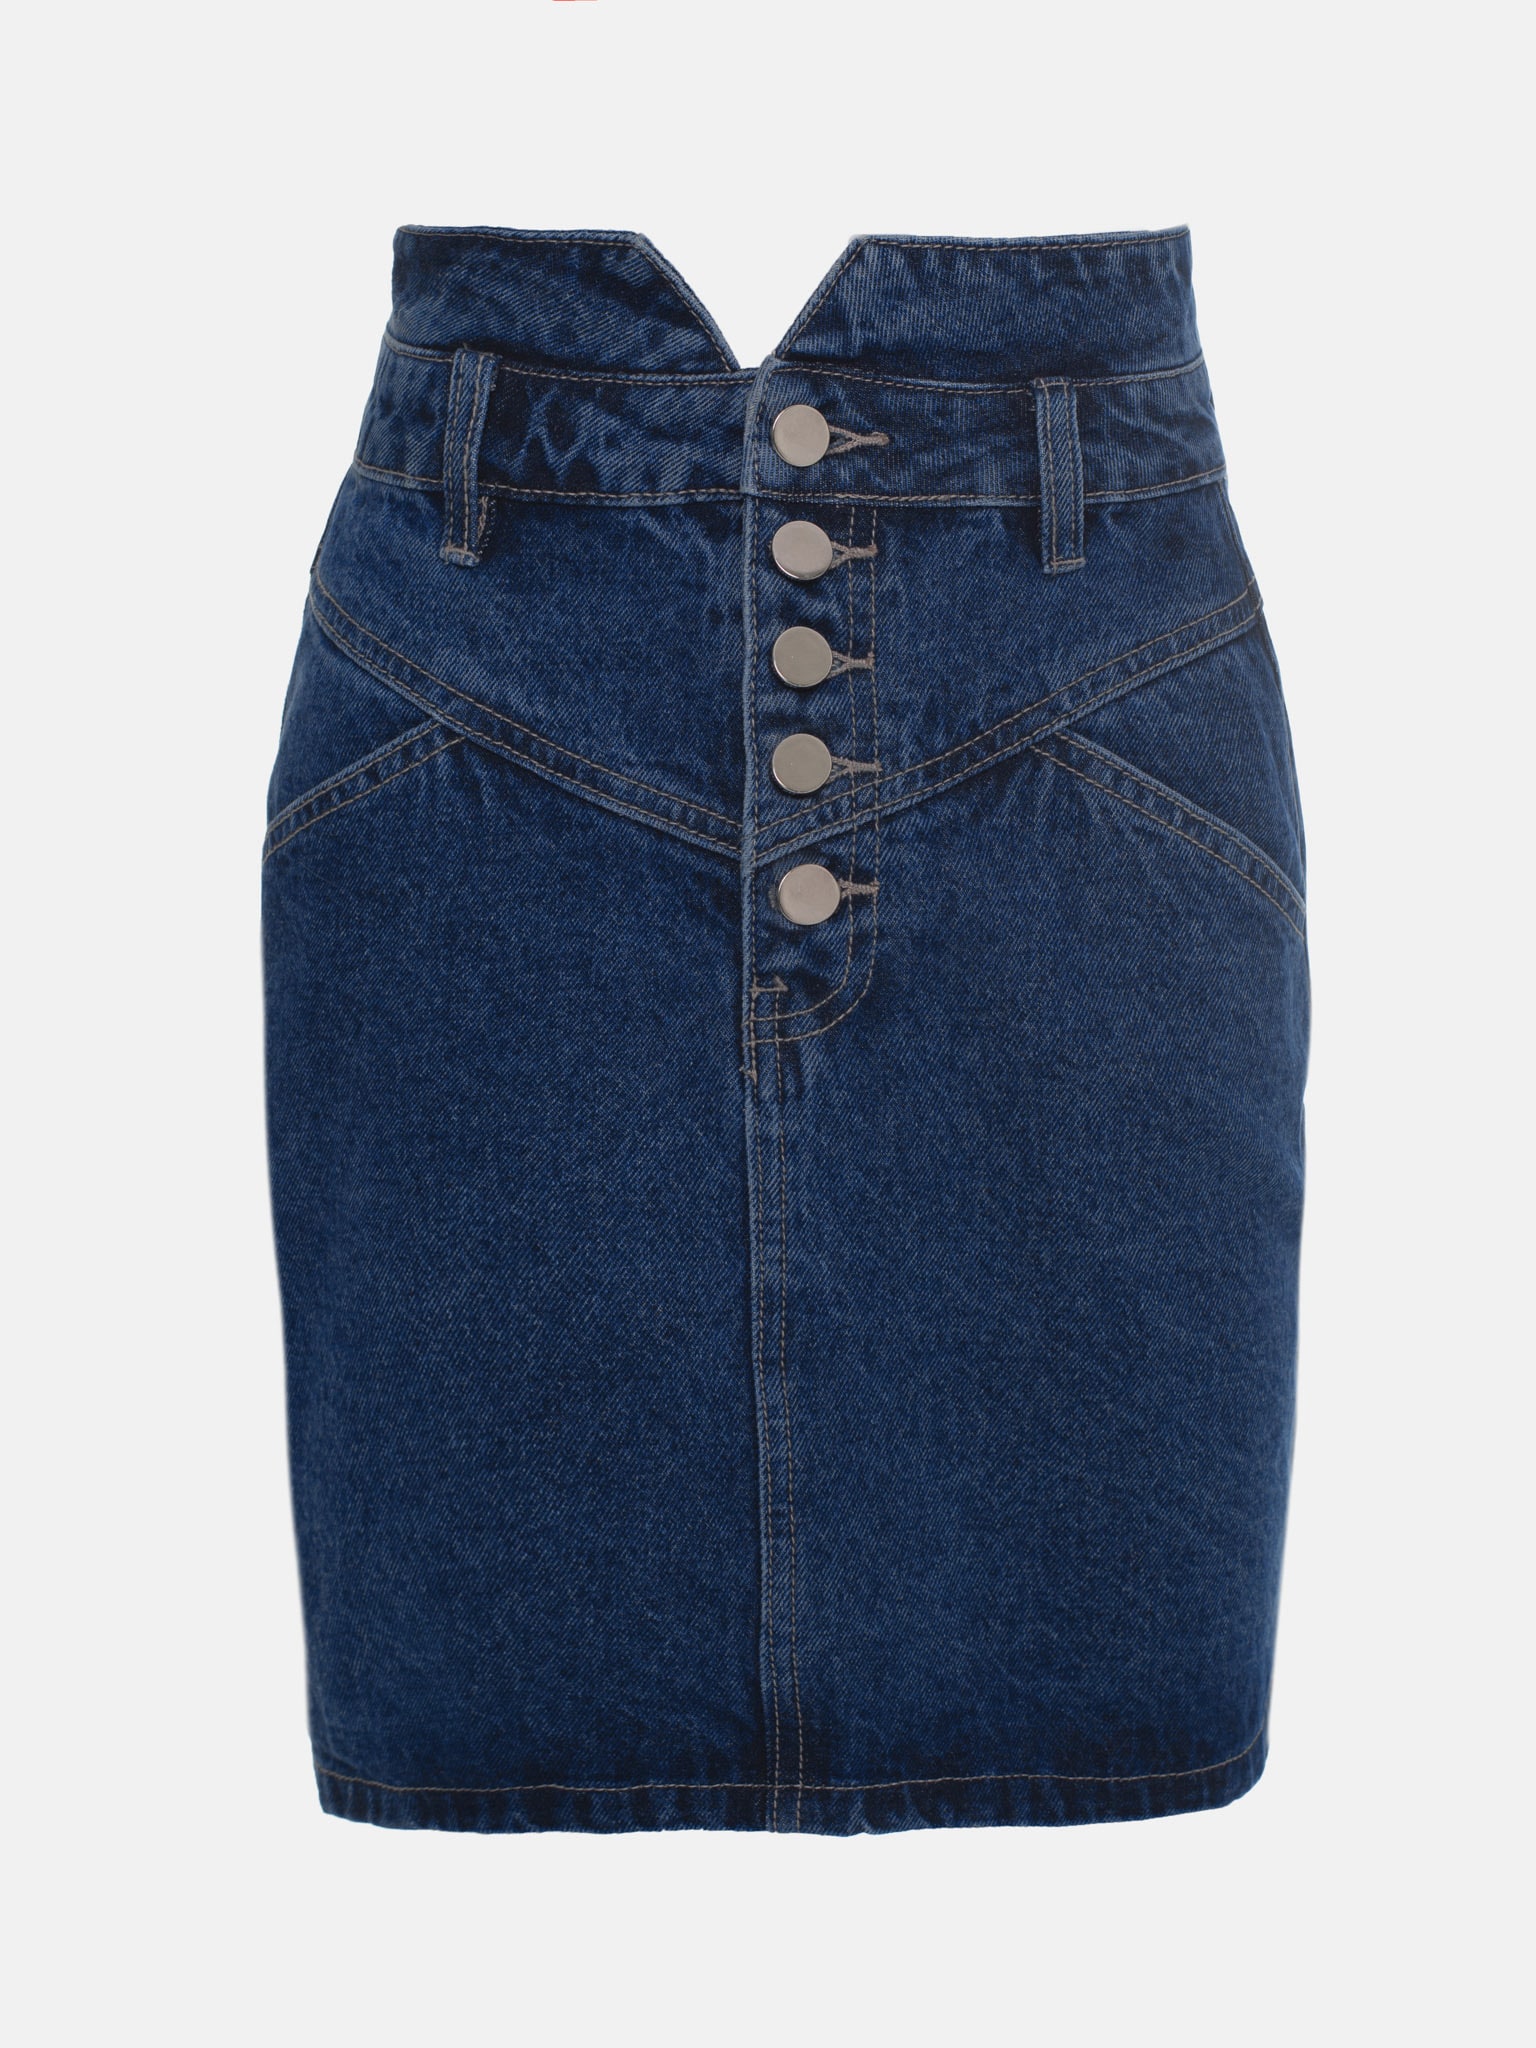 LICHI - Online fashion store :: Buttoned denim mini skirt